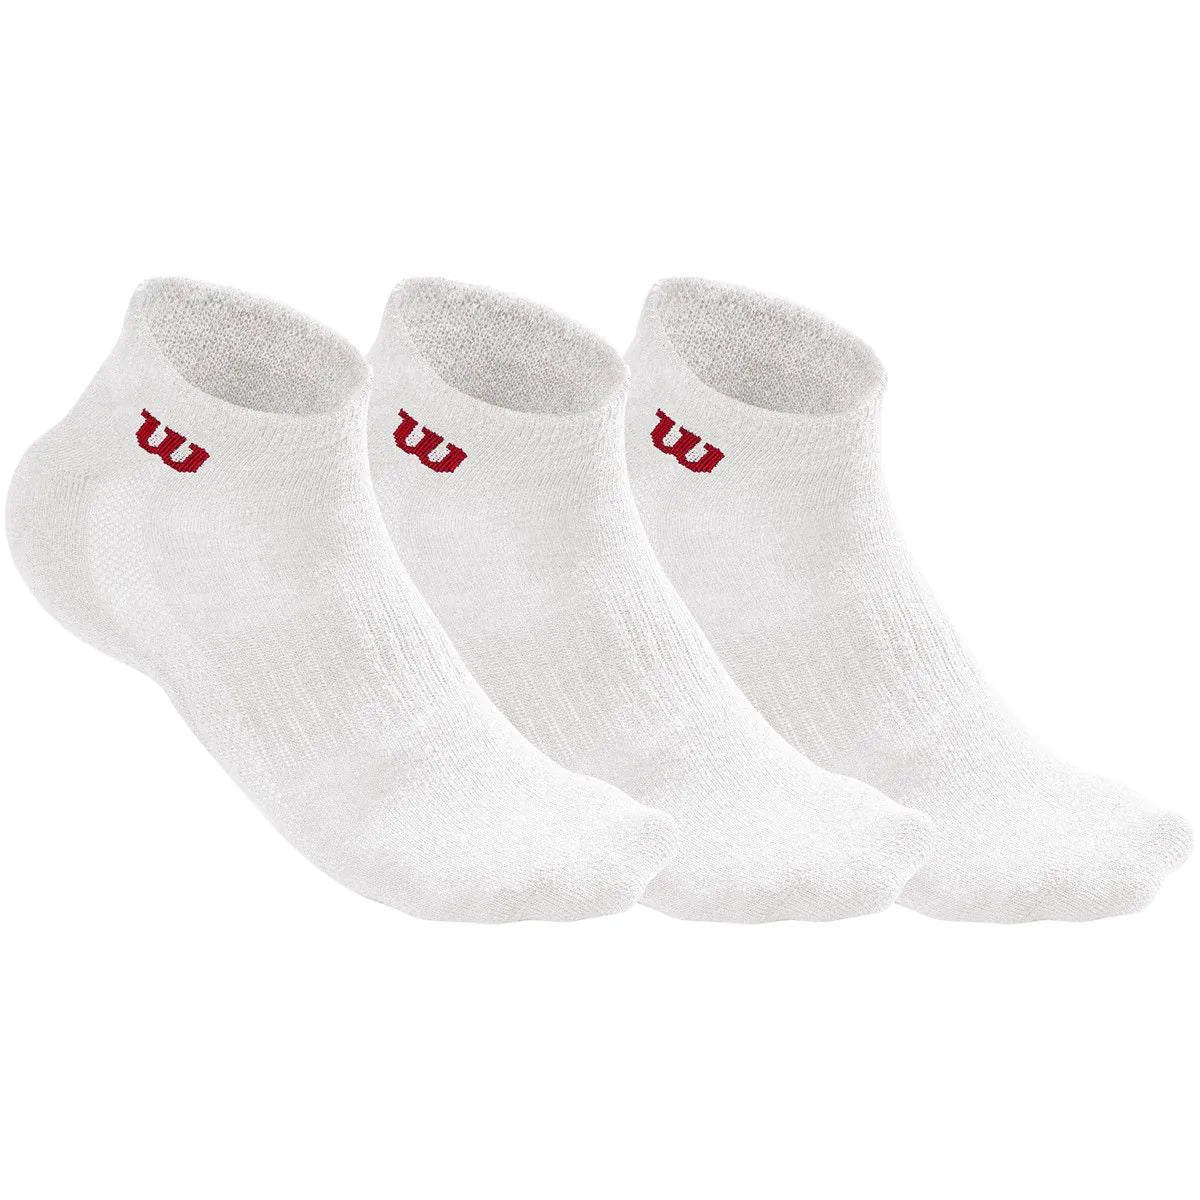 Wilson Men's Quarter Socks 3 Pack White